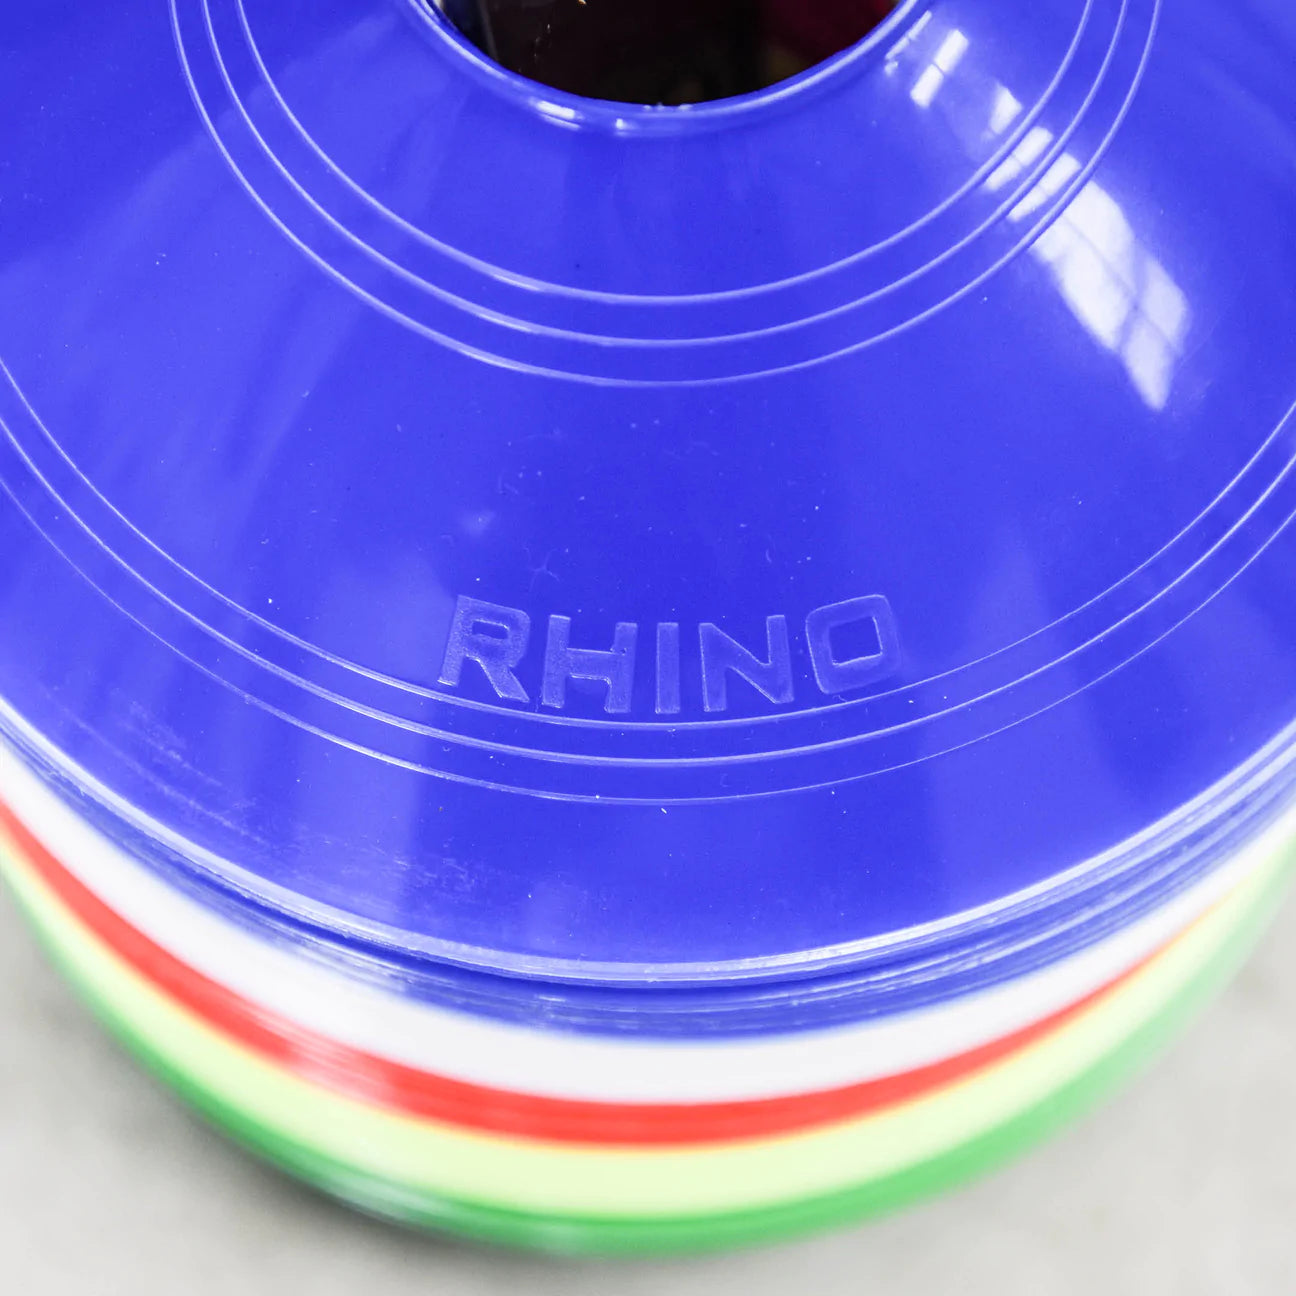 Rhino 网格标记盘